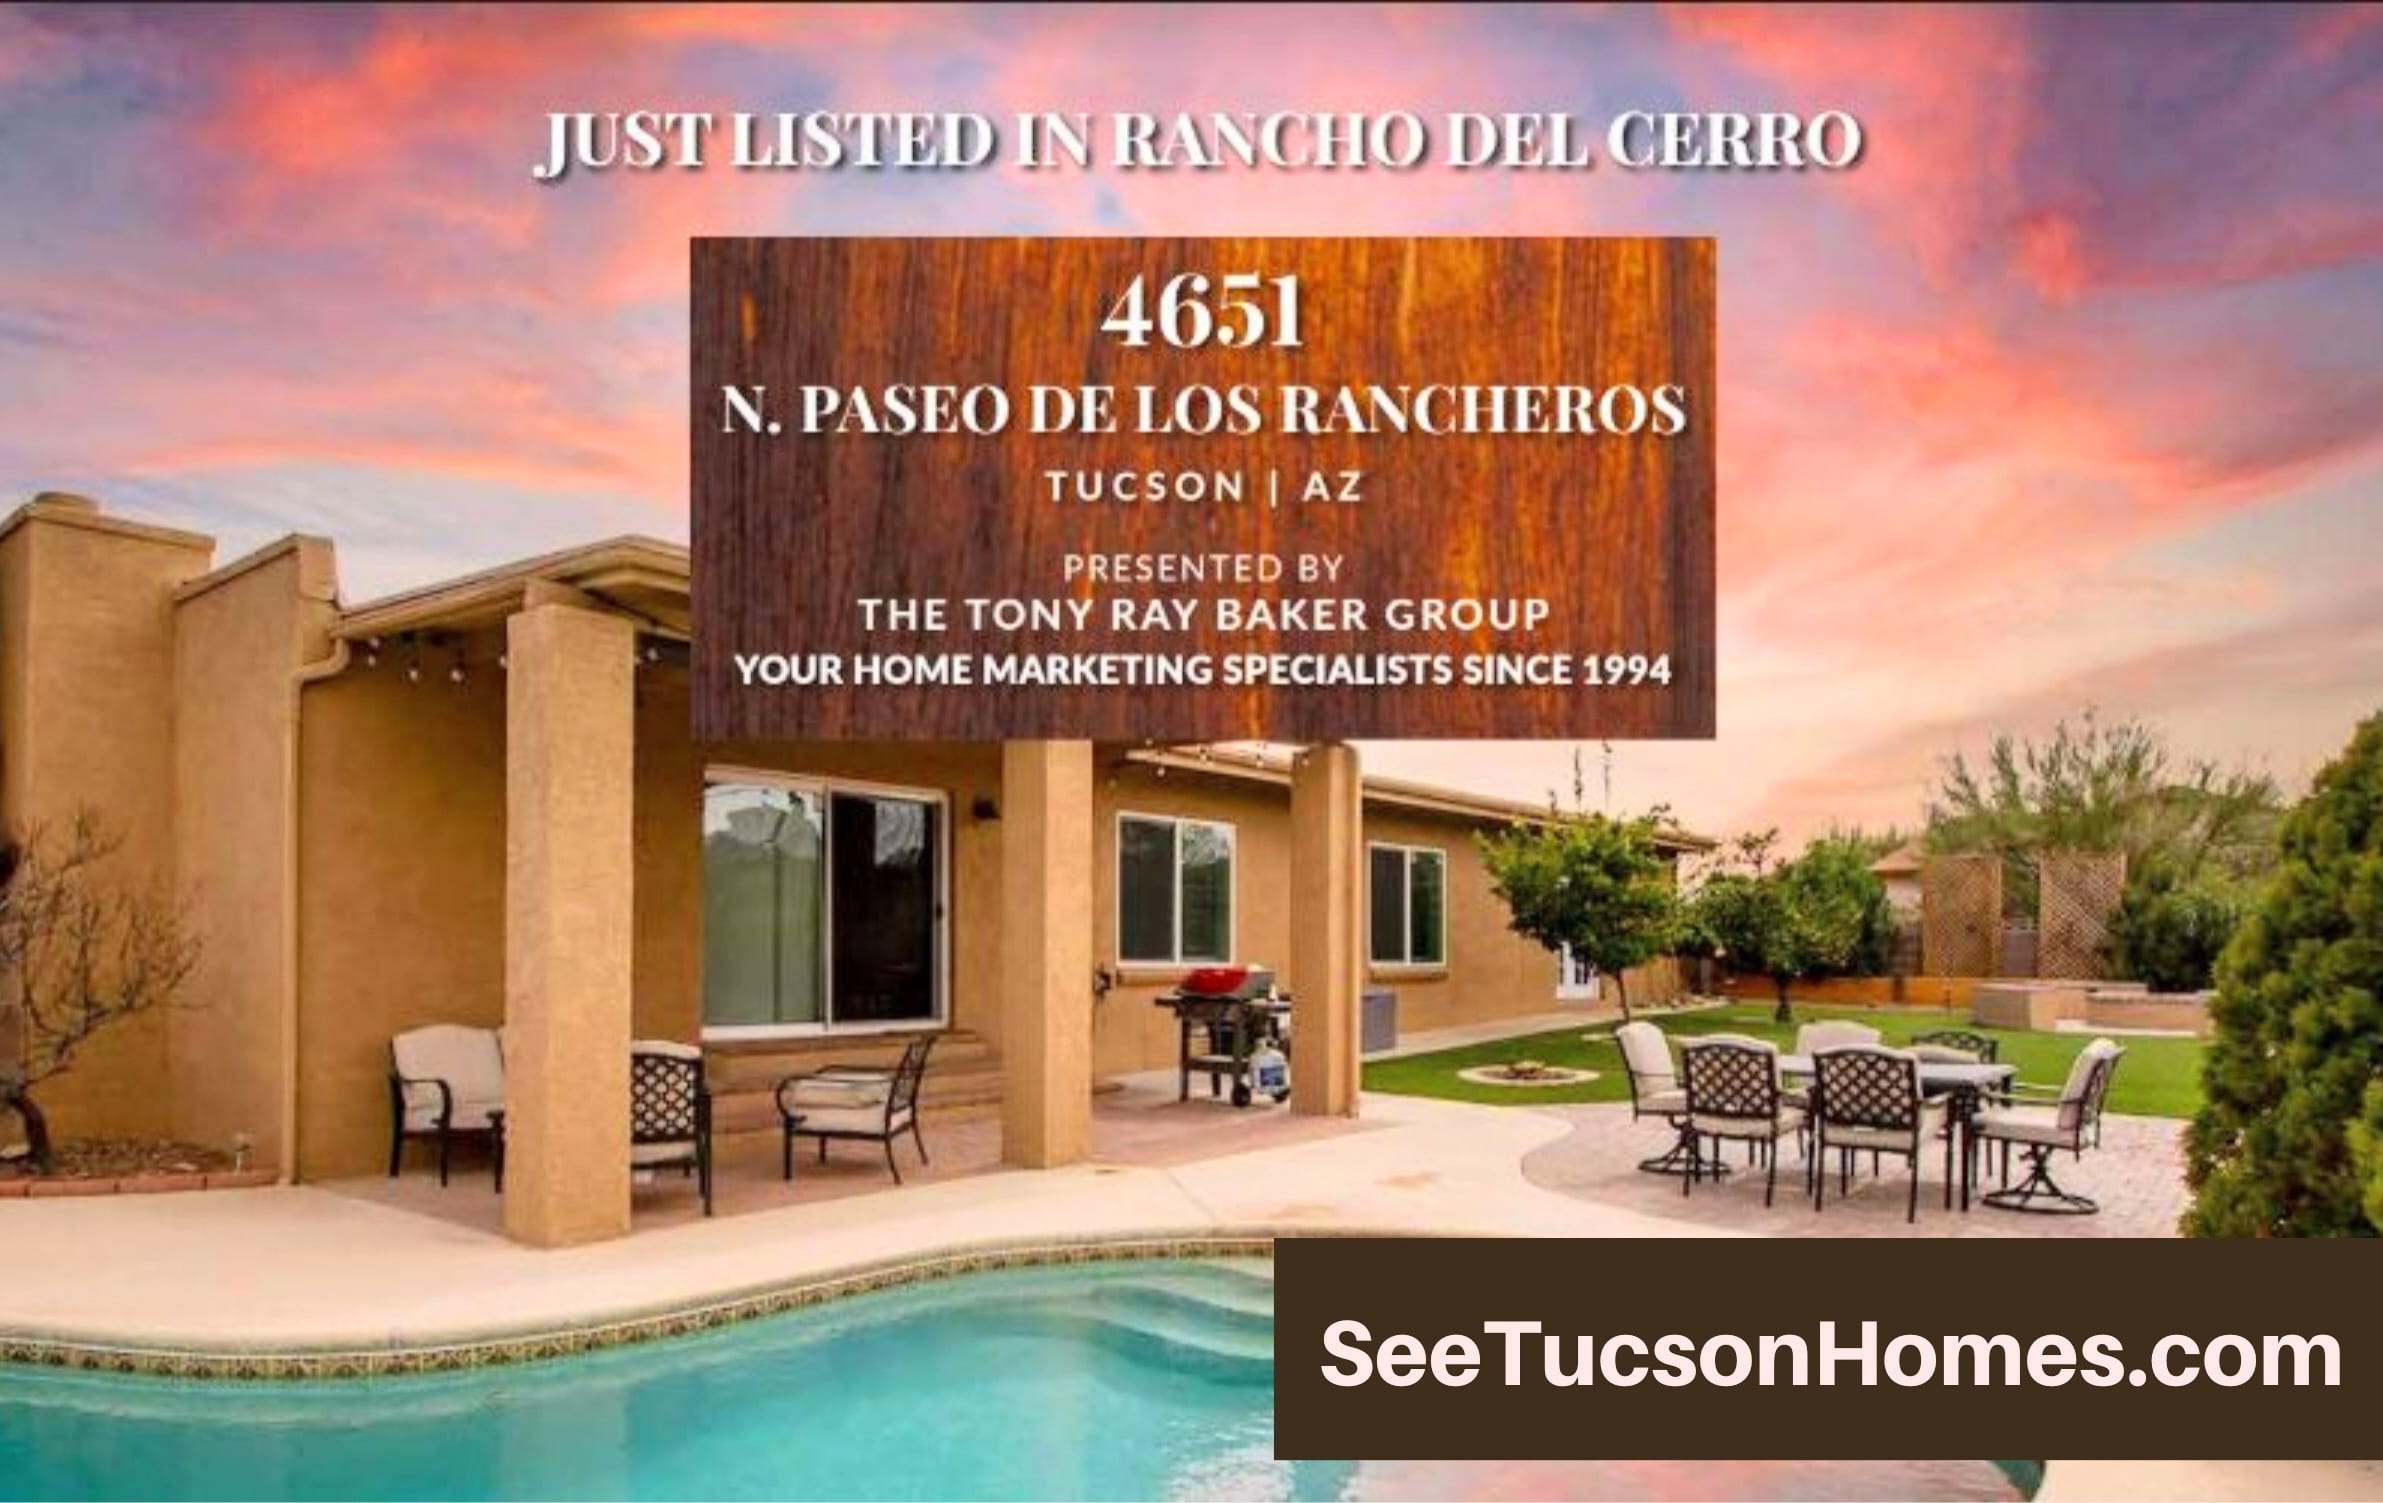 4651 N Paseo de Los Rancheros Tucson AZ 85745 Rancho Del Cerro Home for sale